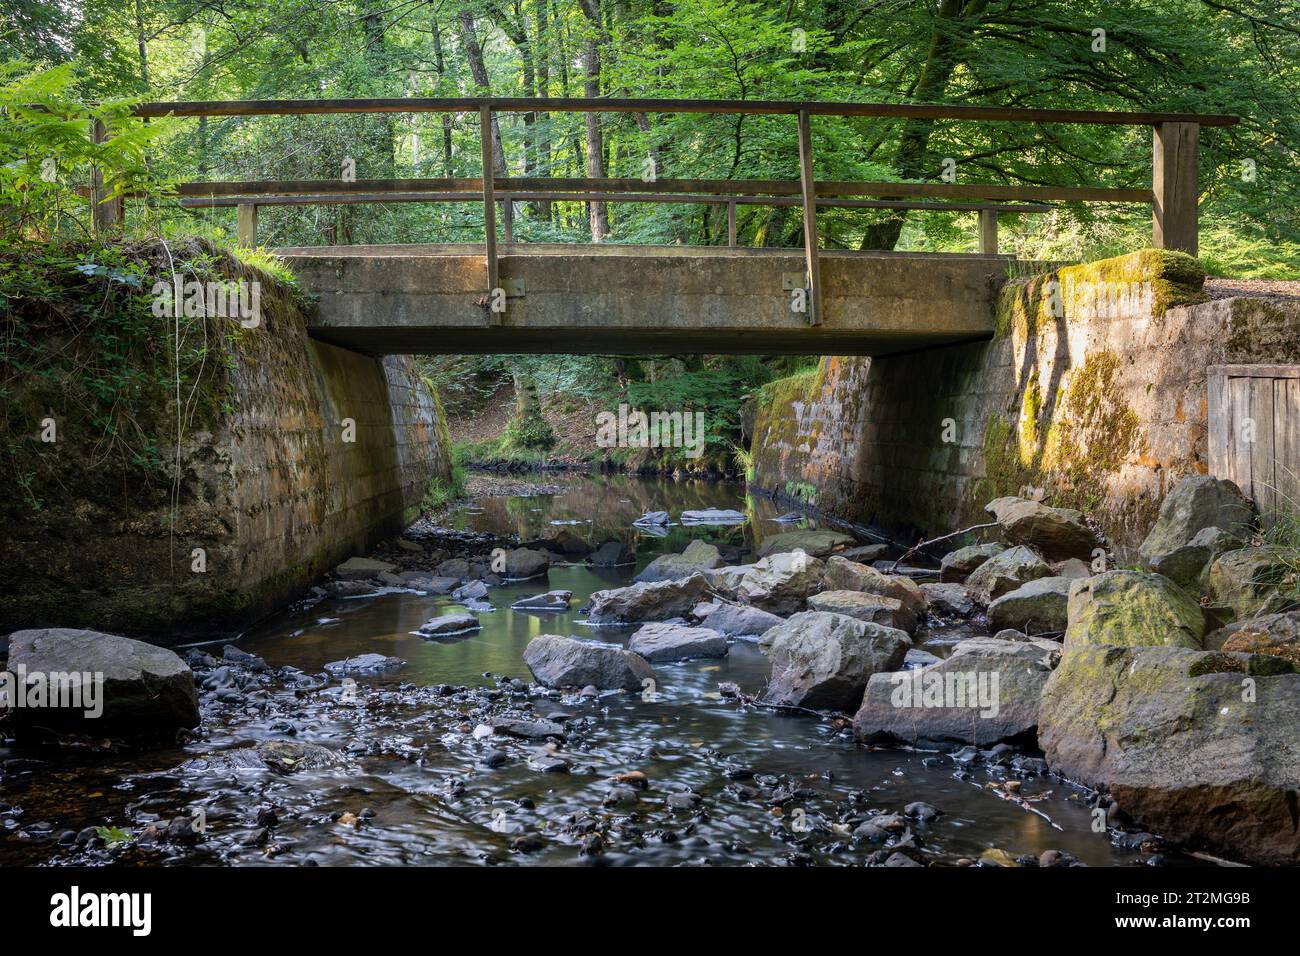 Un petit pont sur une rivière dans la New Forest, Hampshire, Royaume-Uni. Ses murs de briques sont éclairés par une lumière douce tôt le matin. Flux d'eau peu profonds et lents Banque D'Images